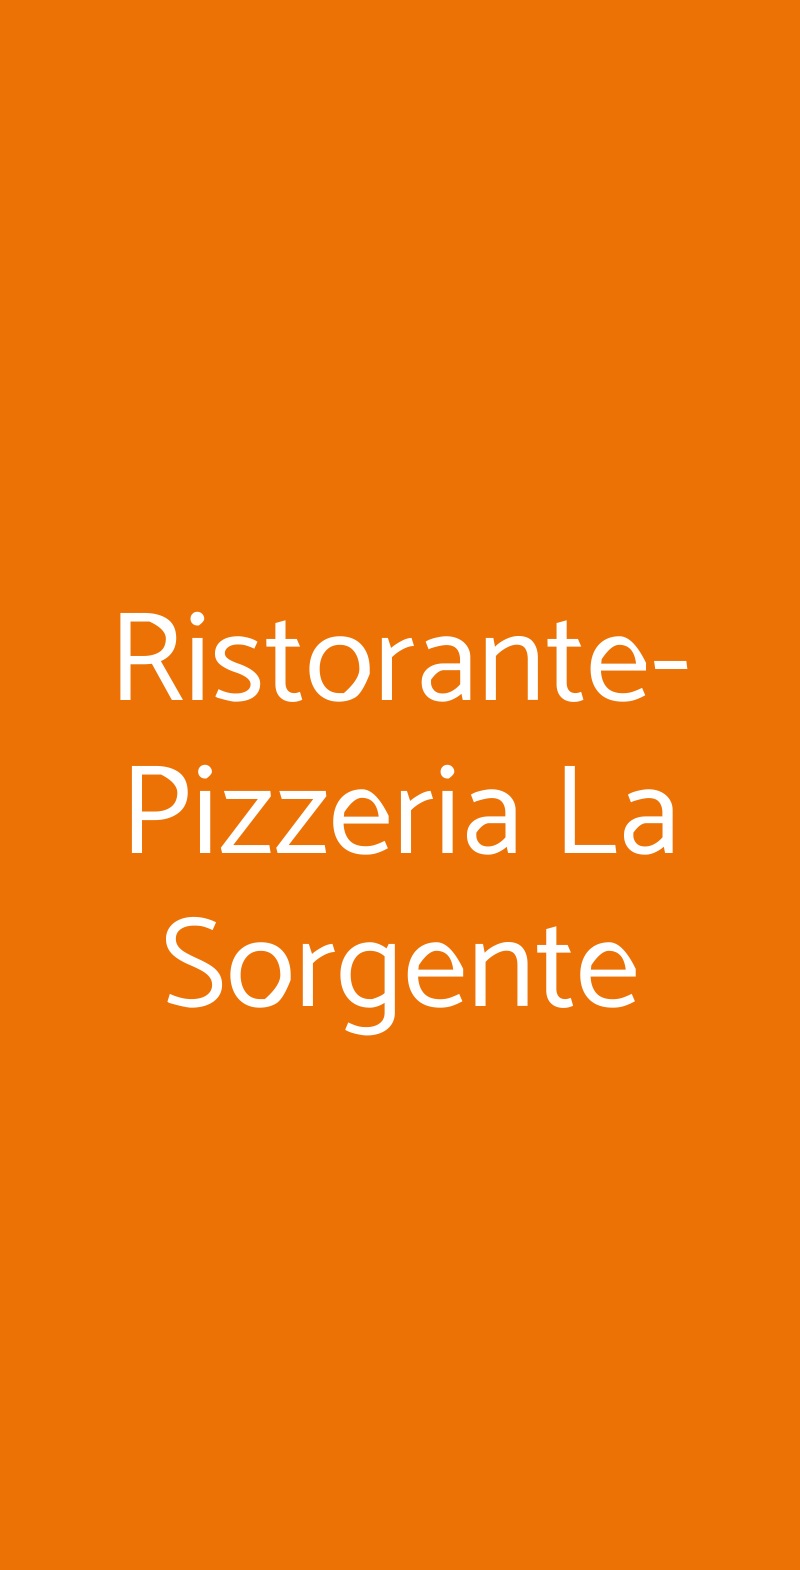 Ristorante-Pizzeria La Sorgente Aglientu menù 1 pagina